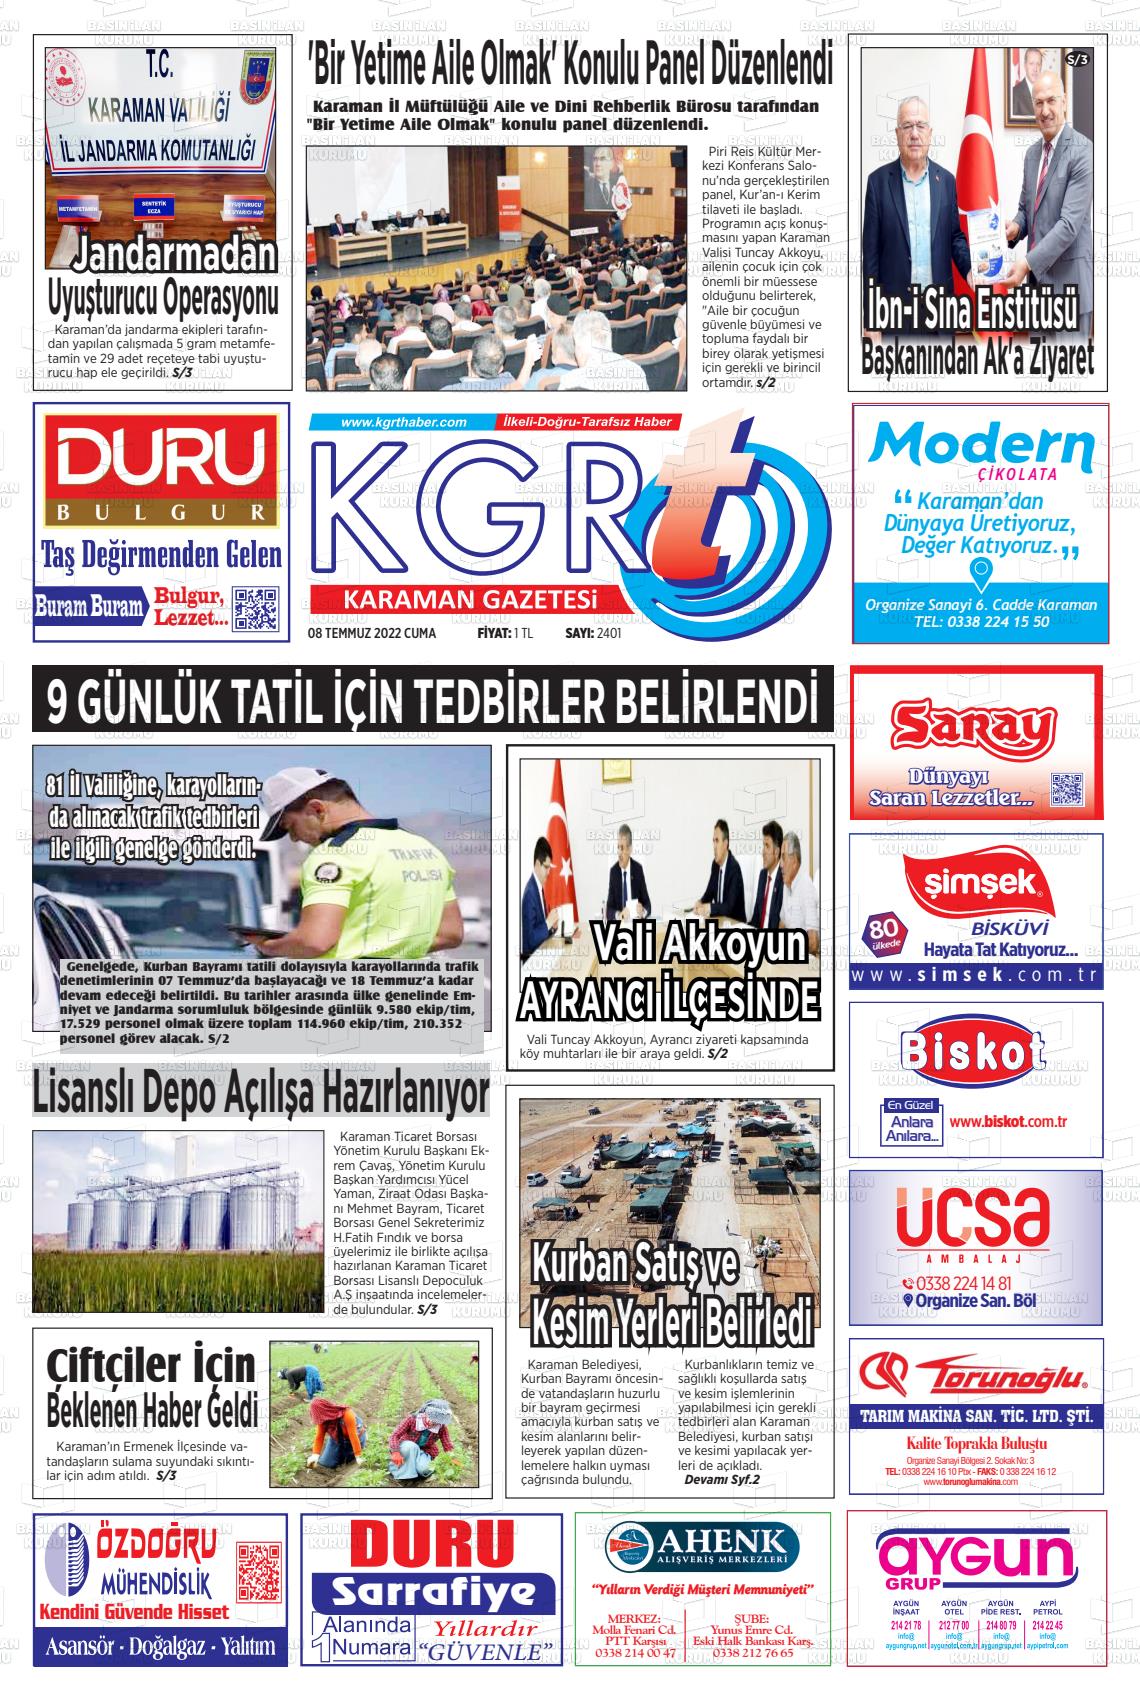 08 Temmuz 2022 Kgrt Karaman Gazete Manşeti